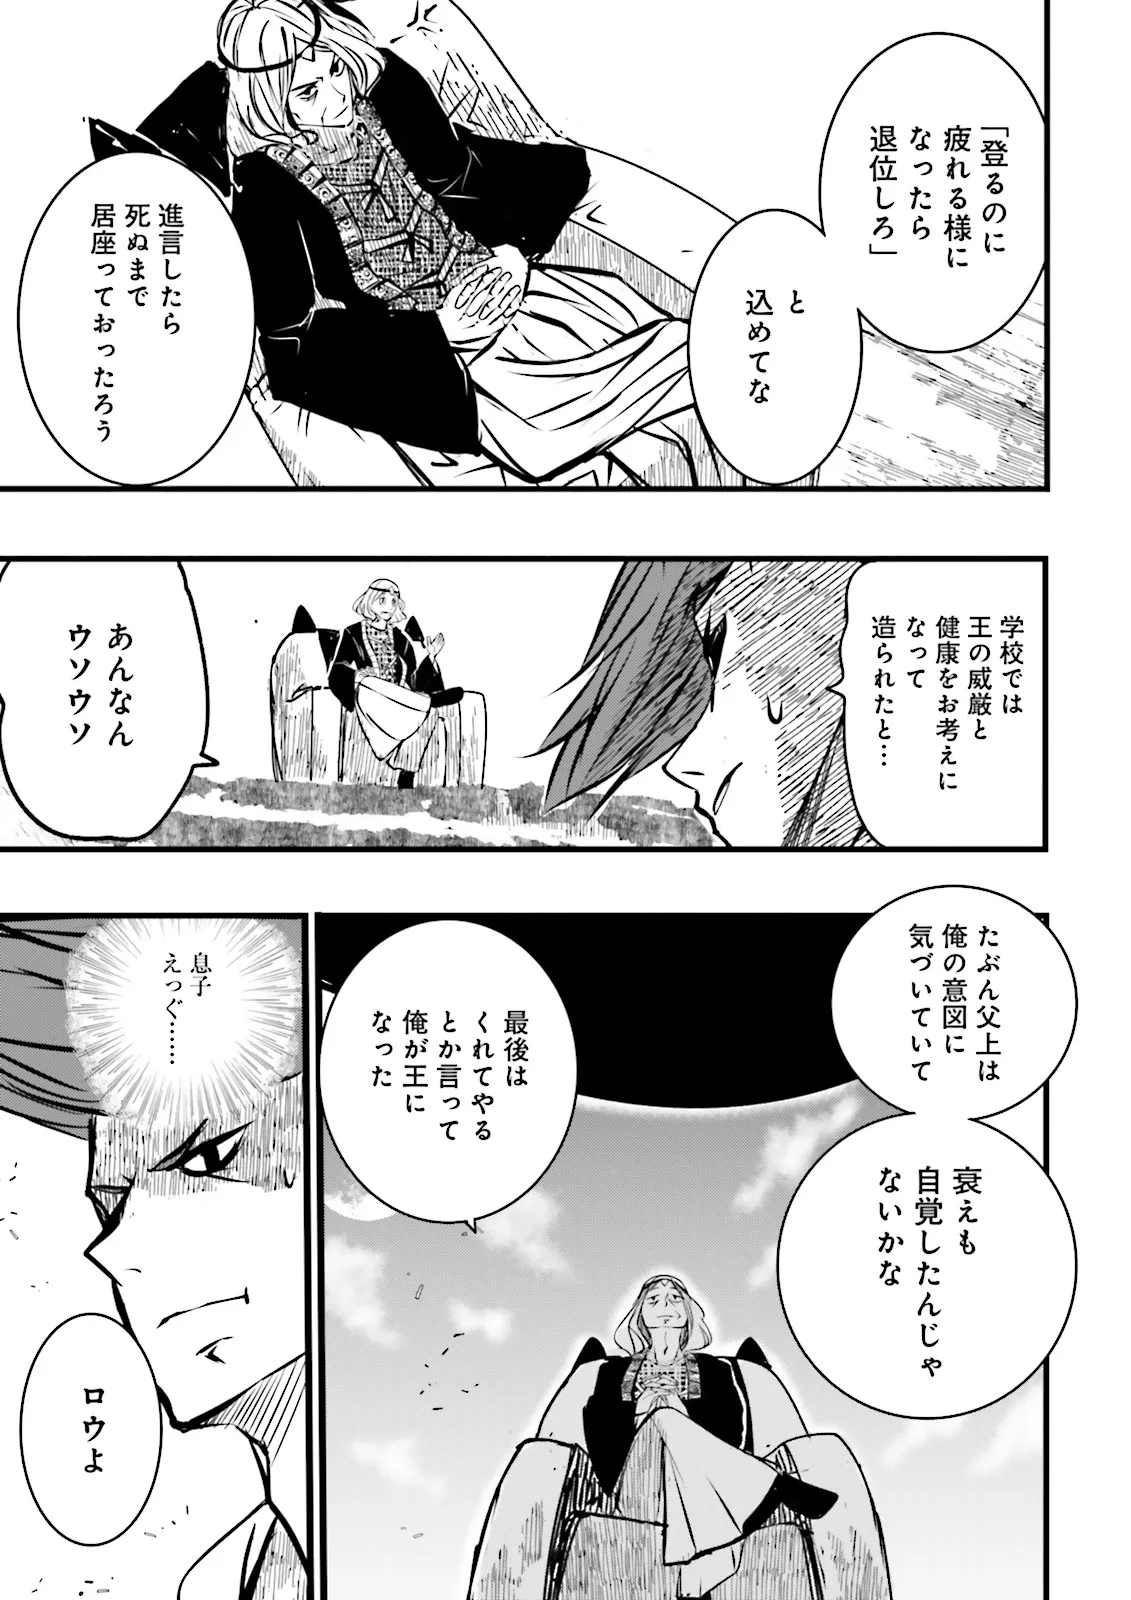 Sukiru Ga Nakereba Level wo Ageru ~ 99 Ga Kansuto No Sekai De Reberu 800 Man Kara Sutato ~ - Chapter 40.4 - Page 3